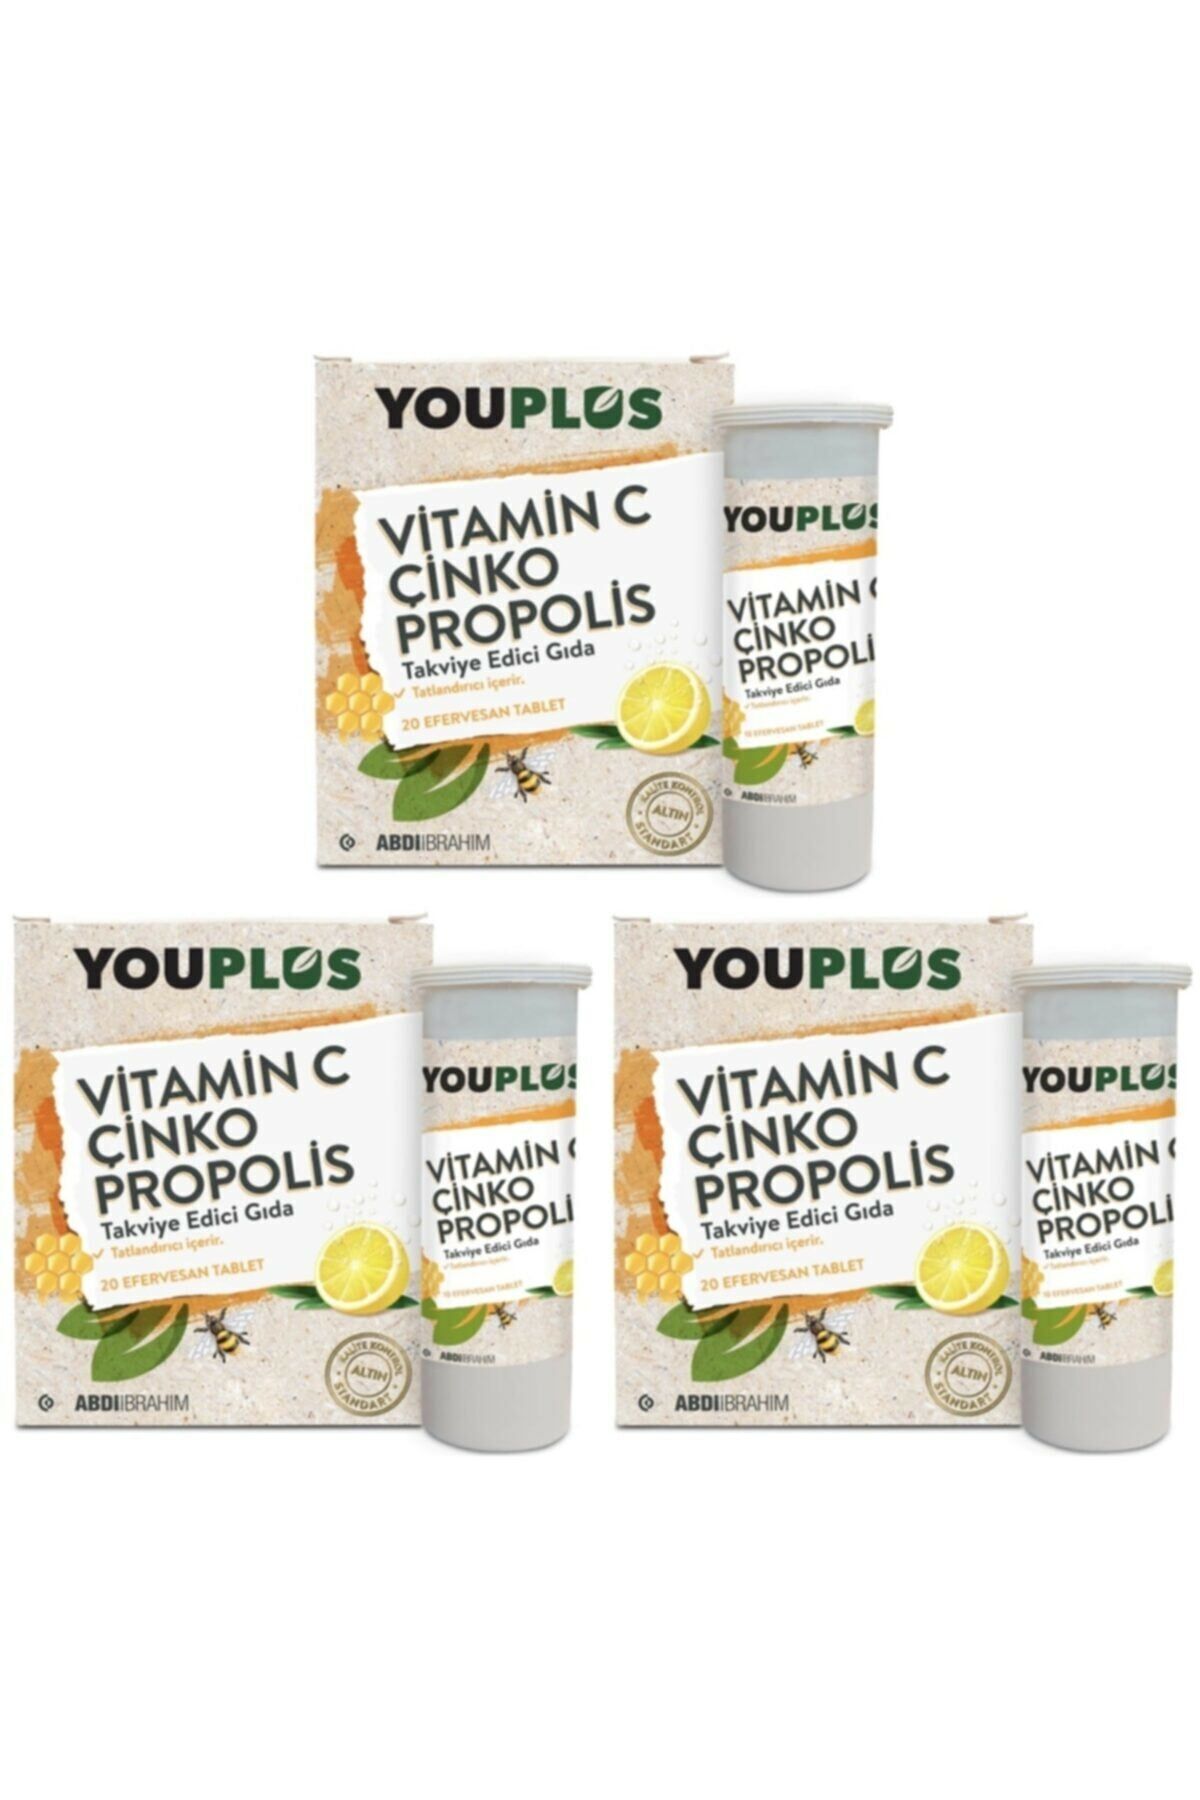 Youplus Vitamin C, Çinko, Propolis Efervesan Tablet Takviye Edici Gıda 3 Adet